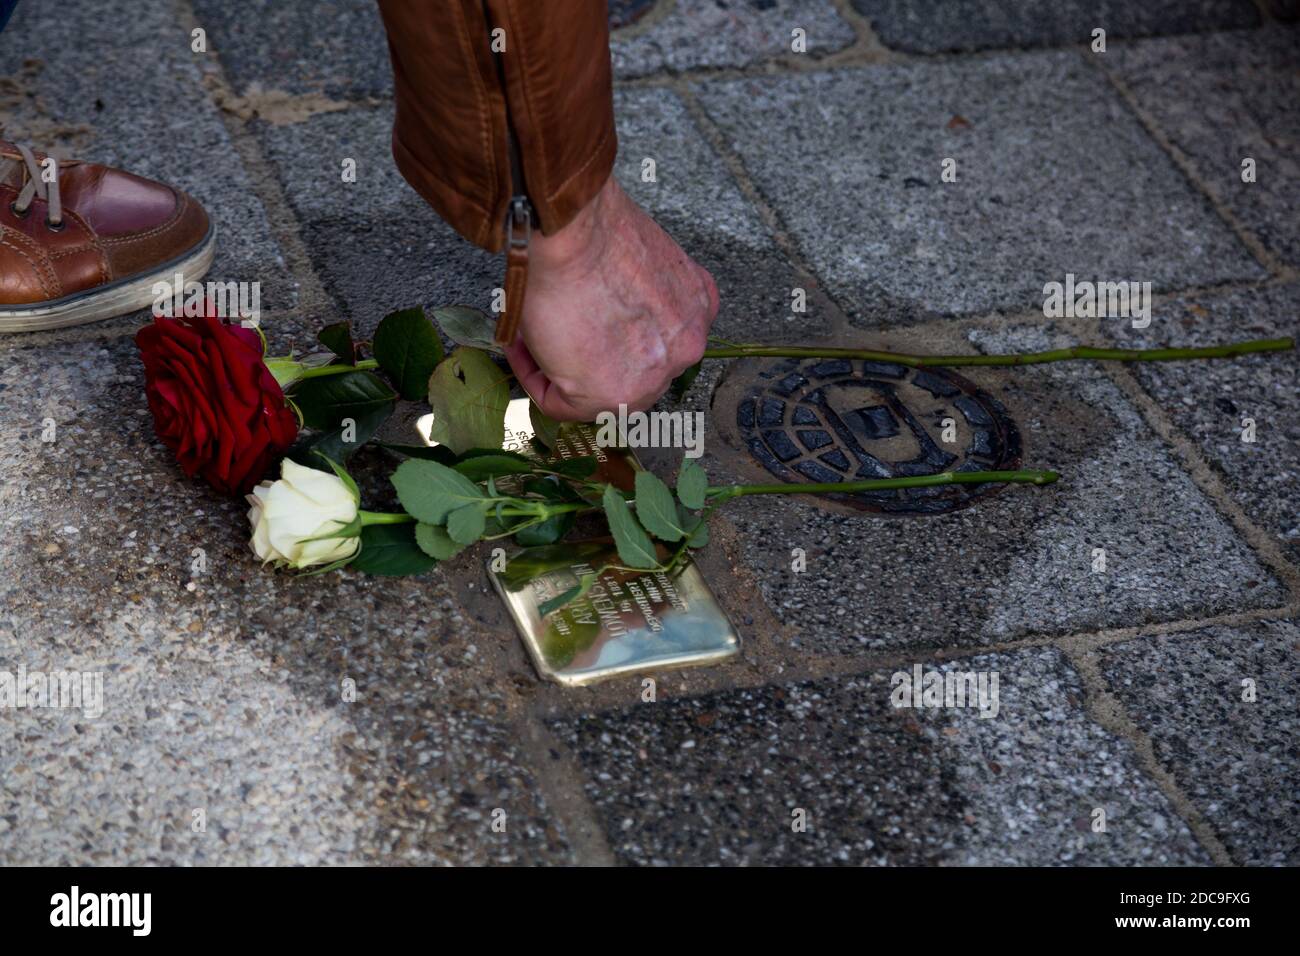 13.10.2020, Brema, Brema, Germania - pietra di inciampo appena posata. Le pietre che inciampano sono usate in tutta la Germania per dare un nome ai deportati nazisti al thei Foto Stock